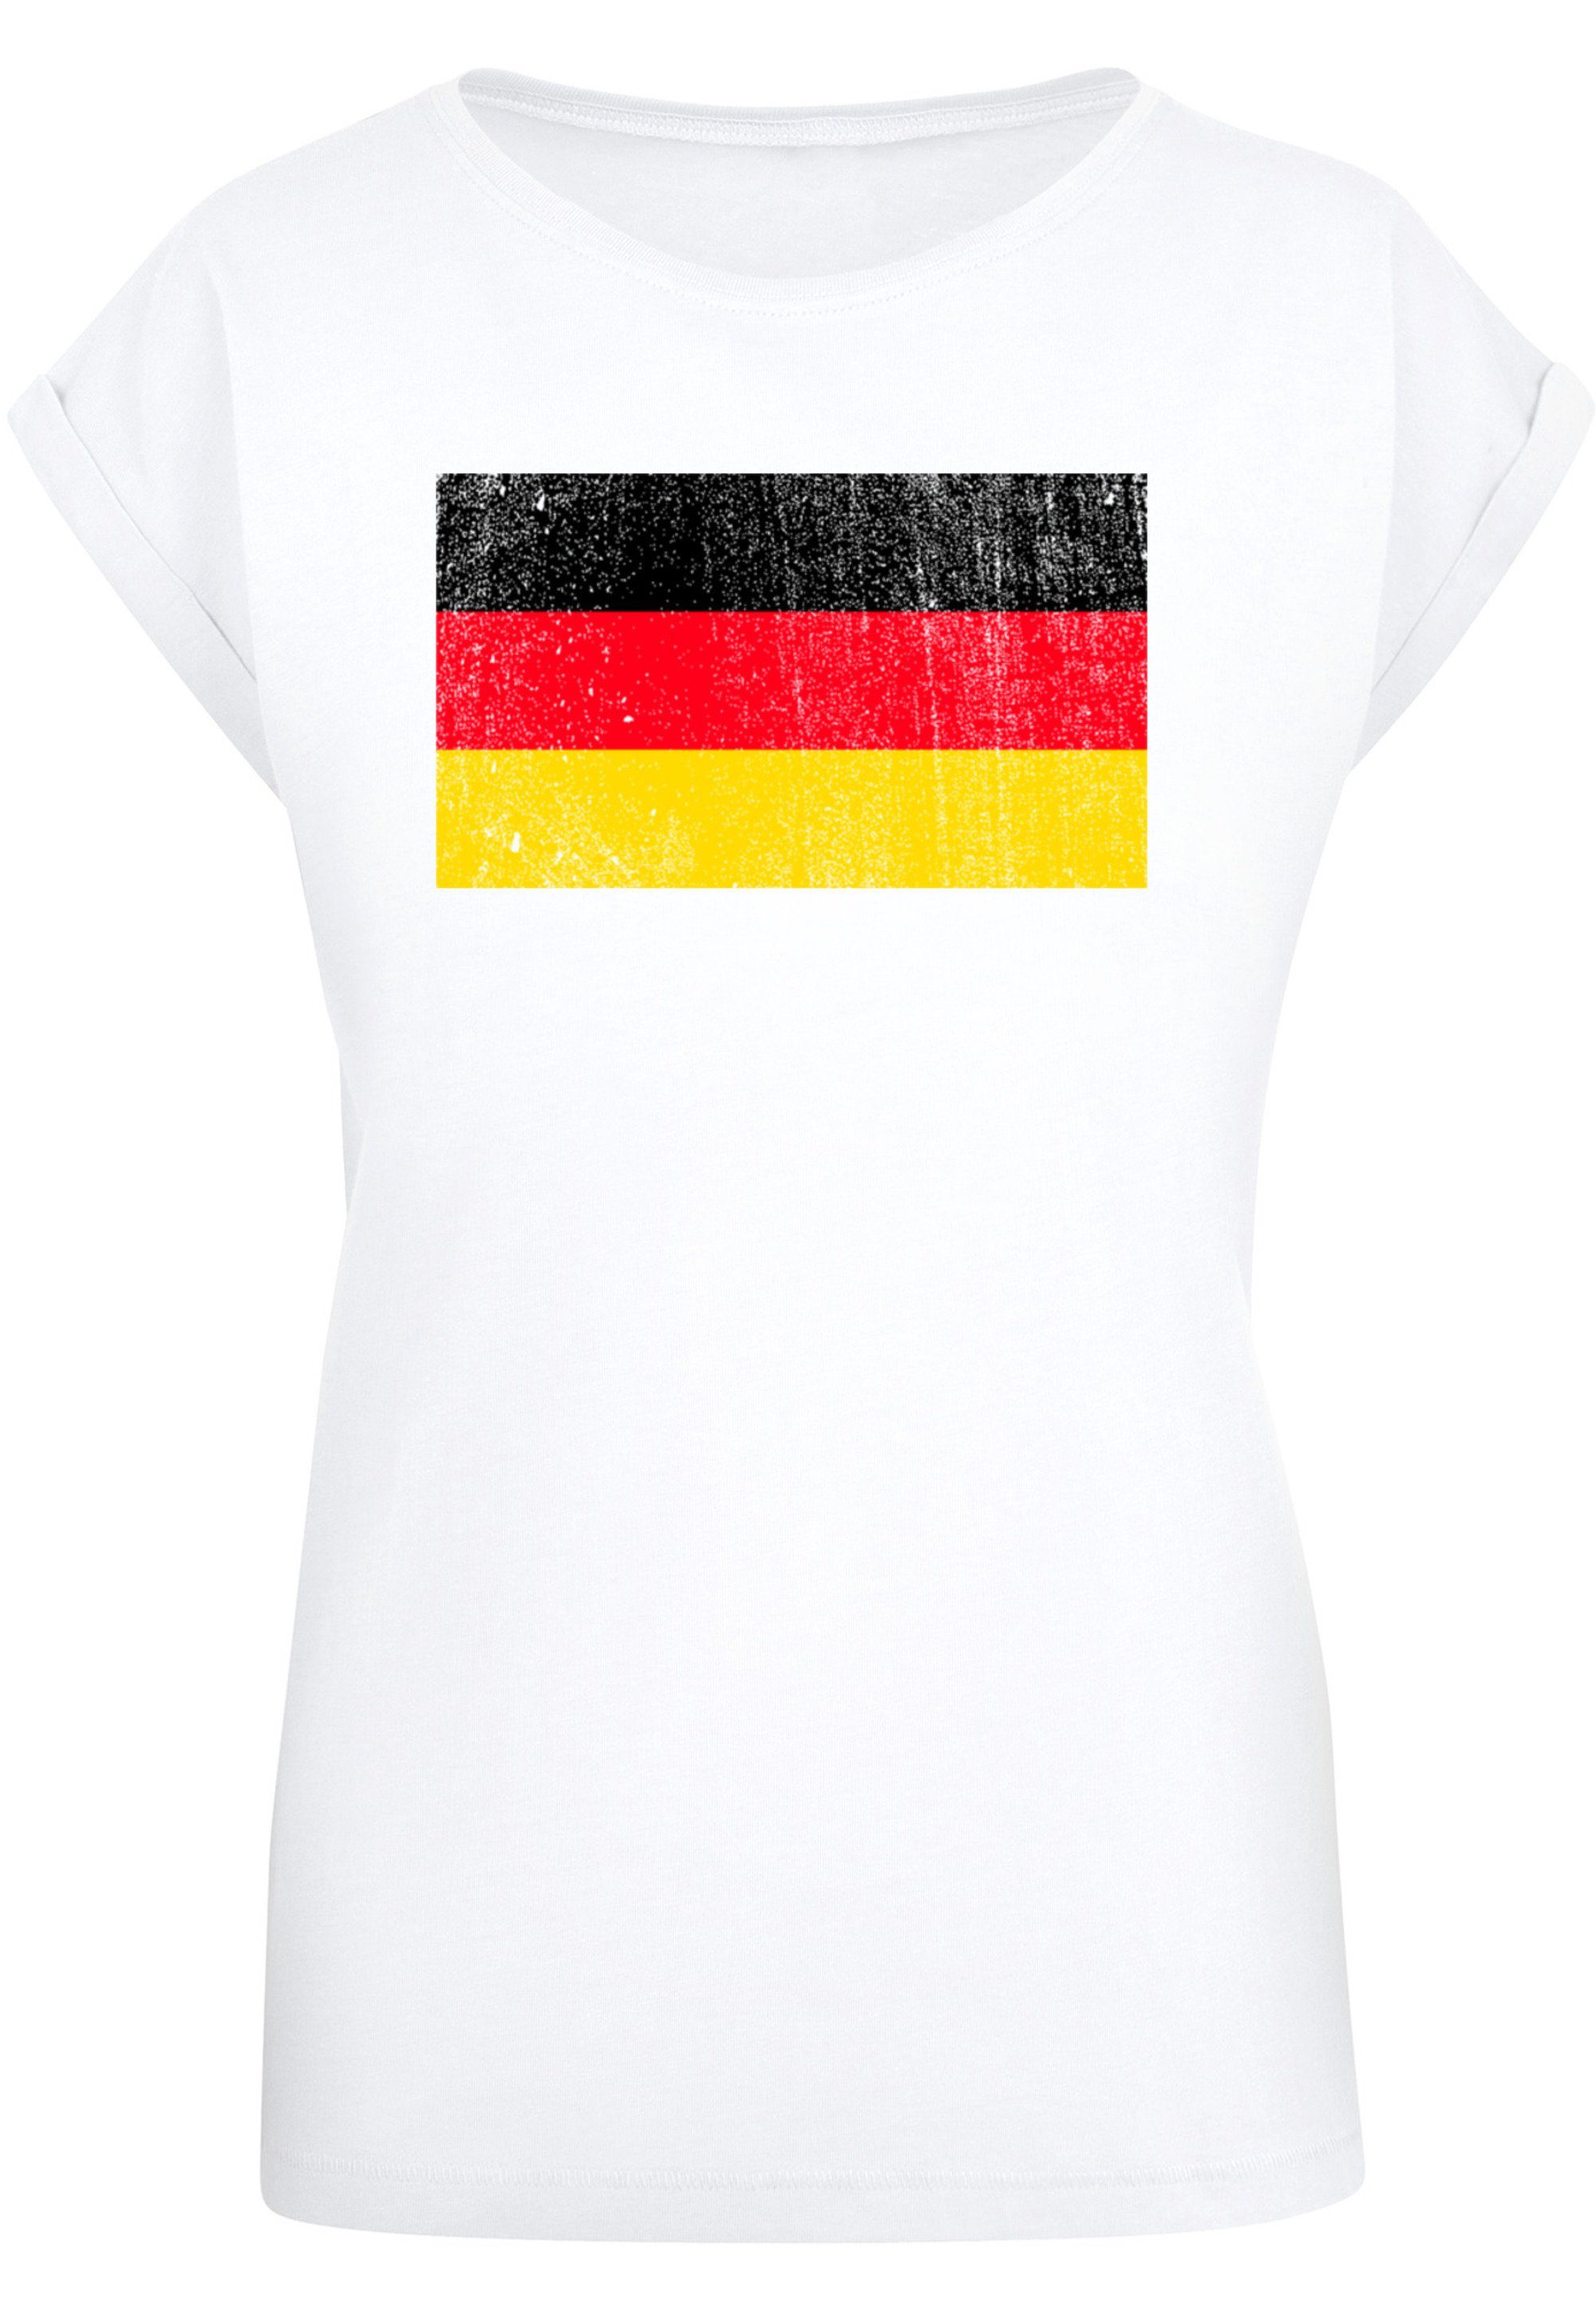 T-Shirt Deutschland distressed Flagge Sehr weicher hohem mit Tragekomfort Print, Germany Baumwollstoff F4NT4STIC